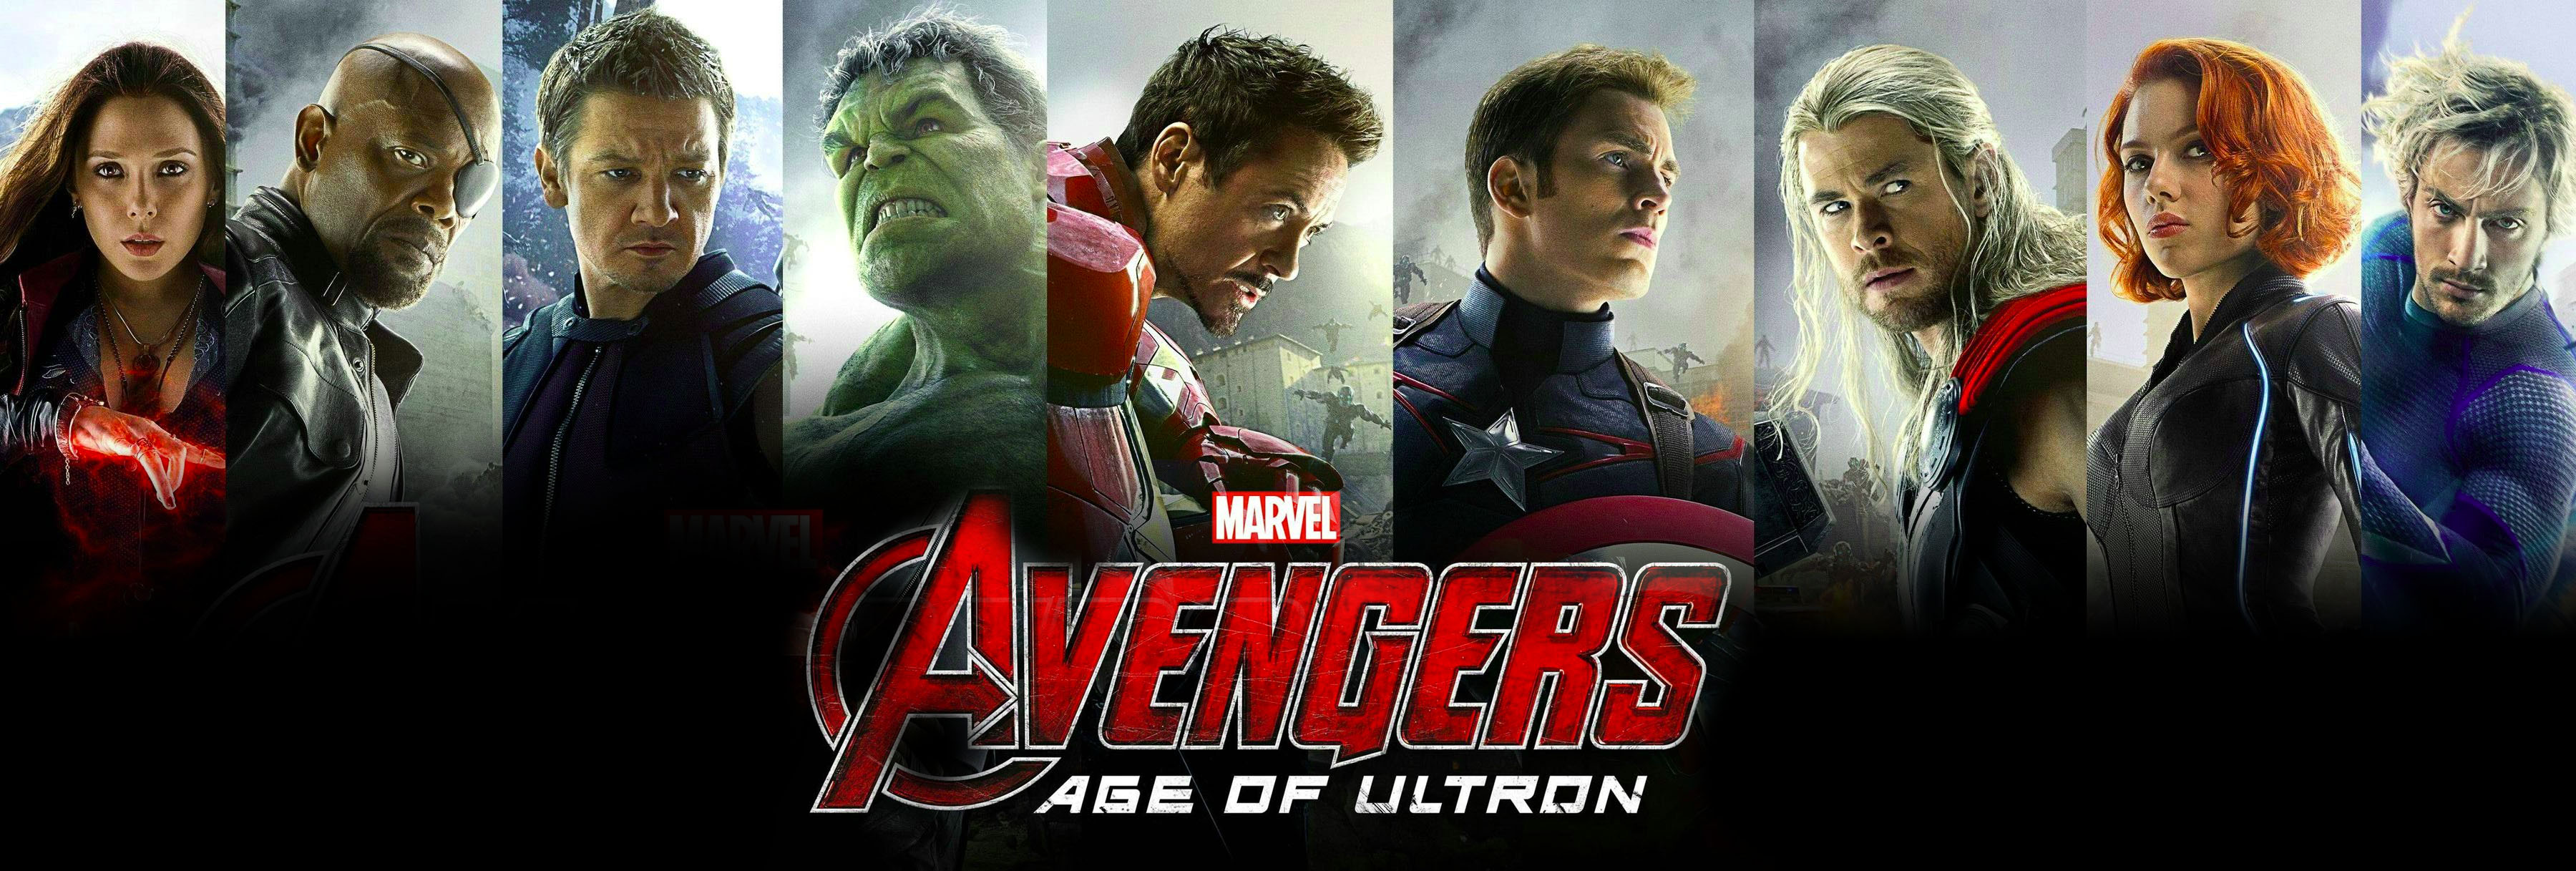 Alumni Work on Avengers: Age of Ultron